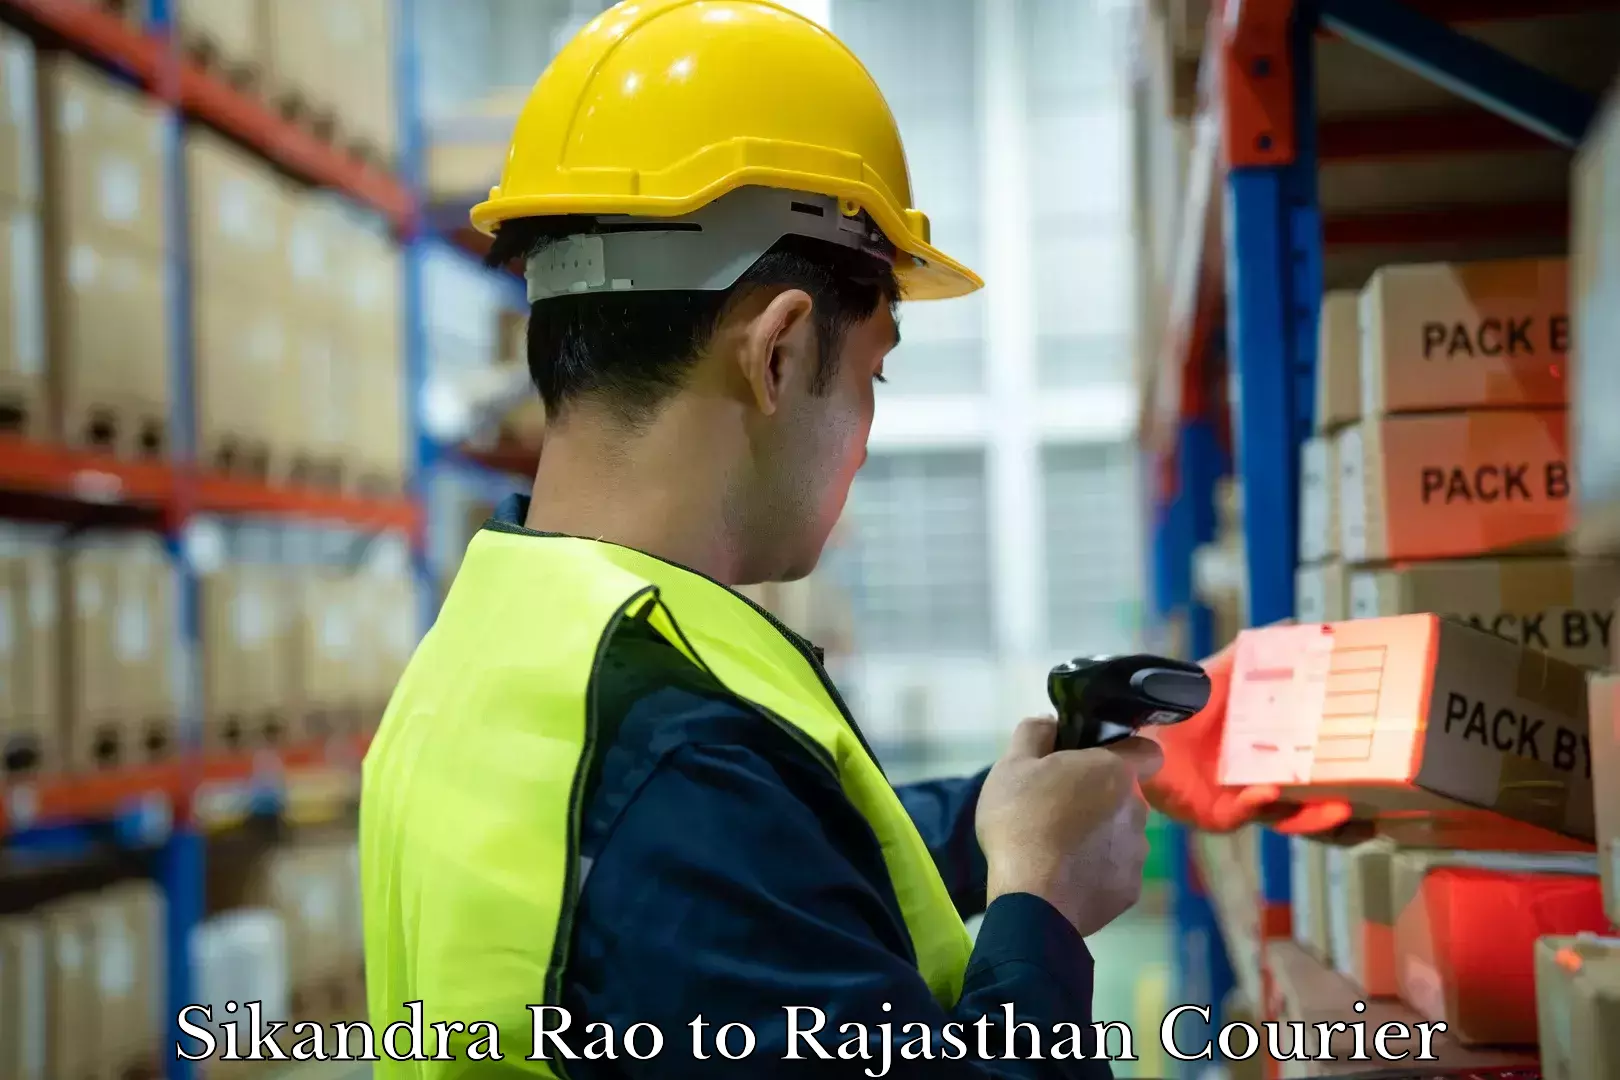 Baggage shipping service Sikandra Rao to Rajasthan